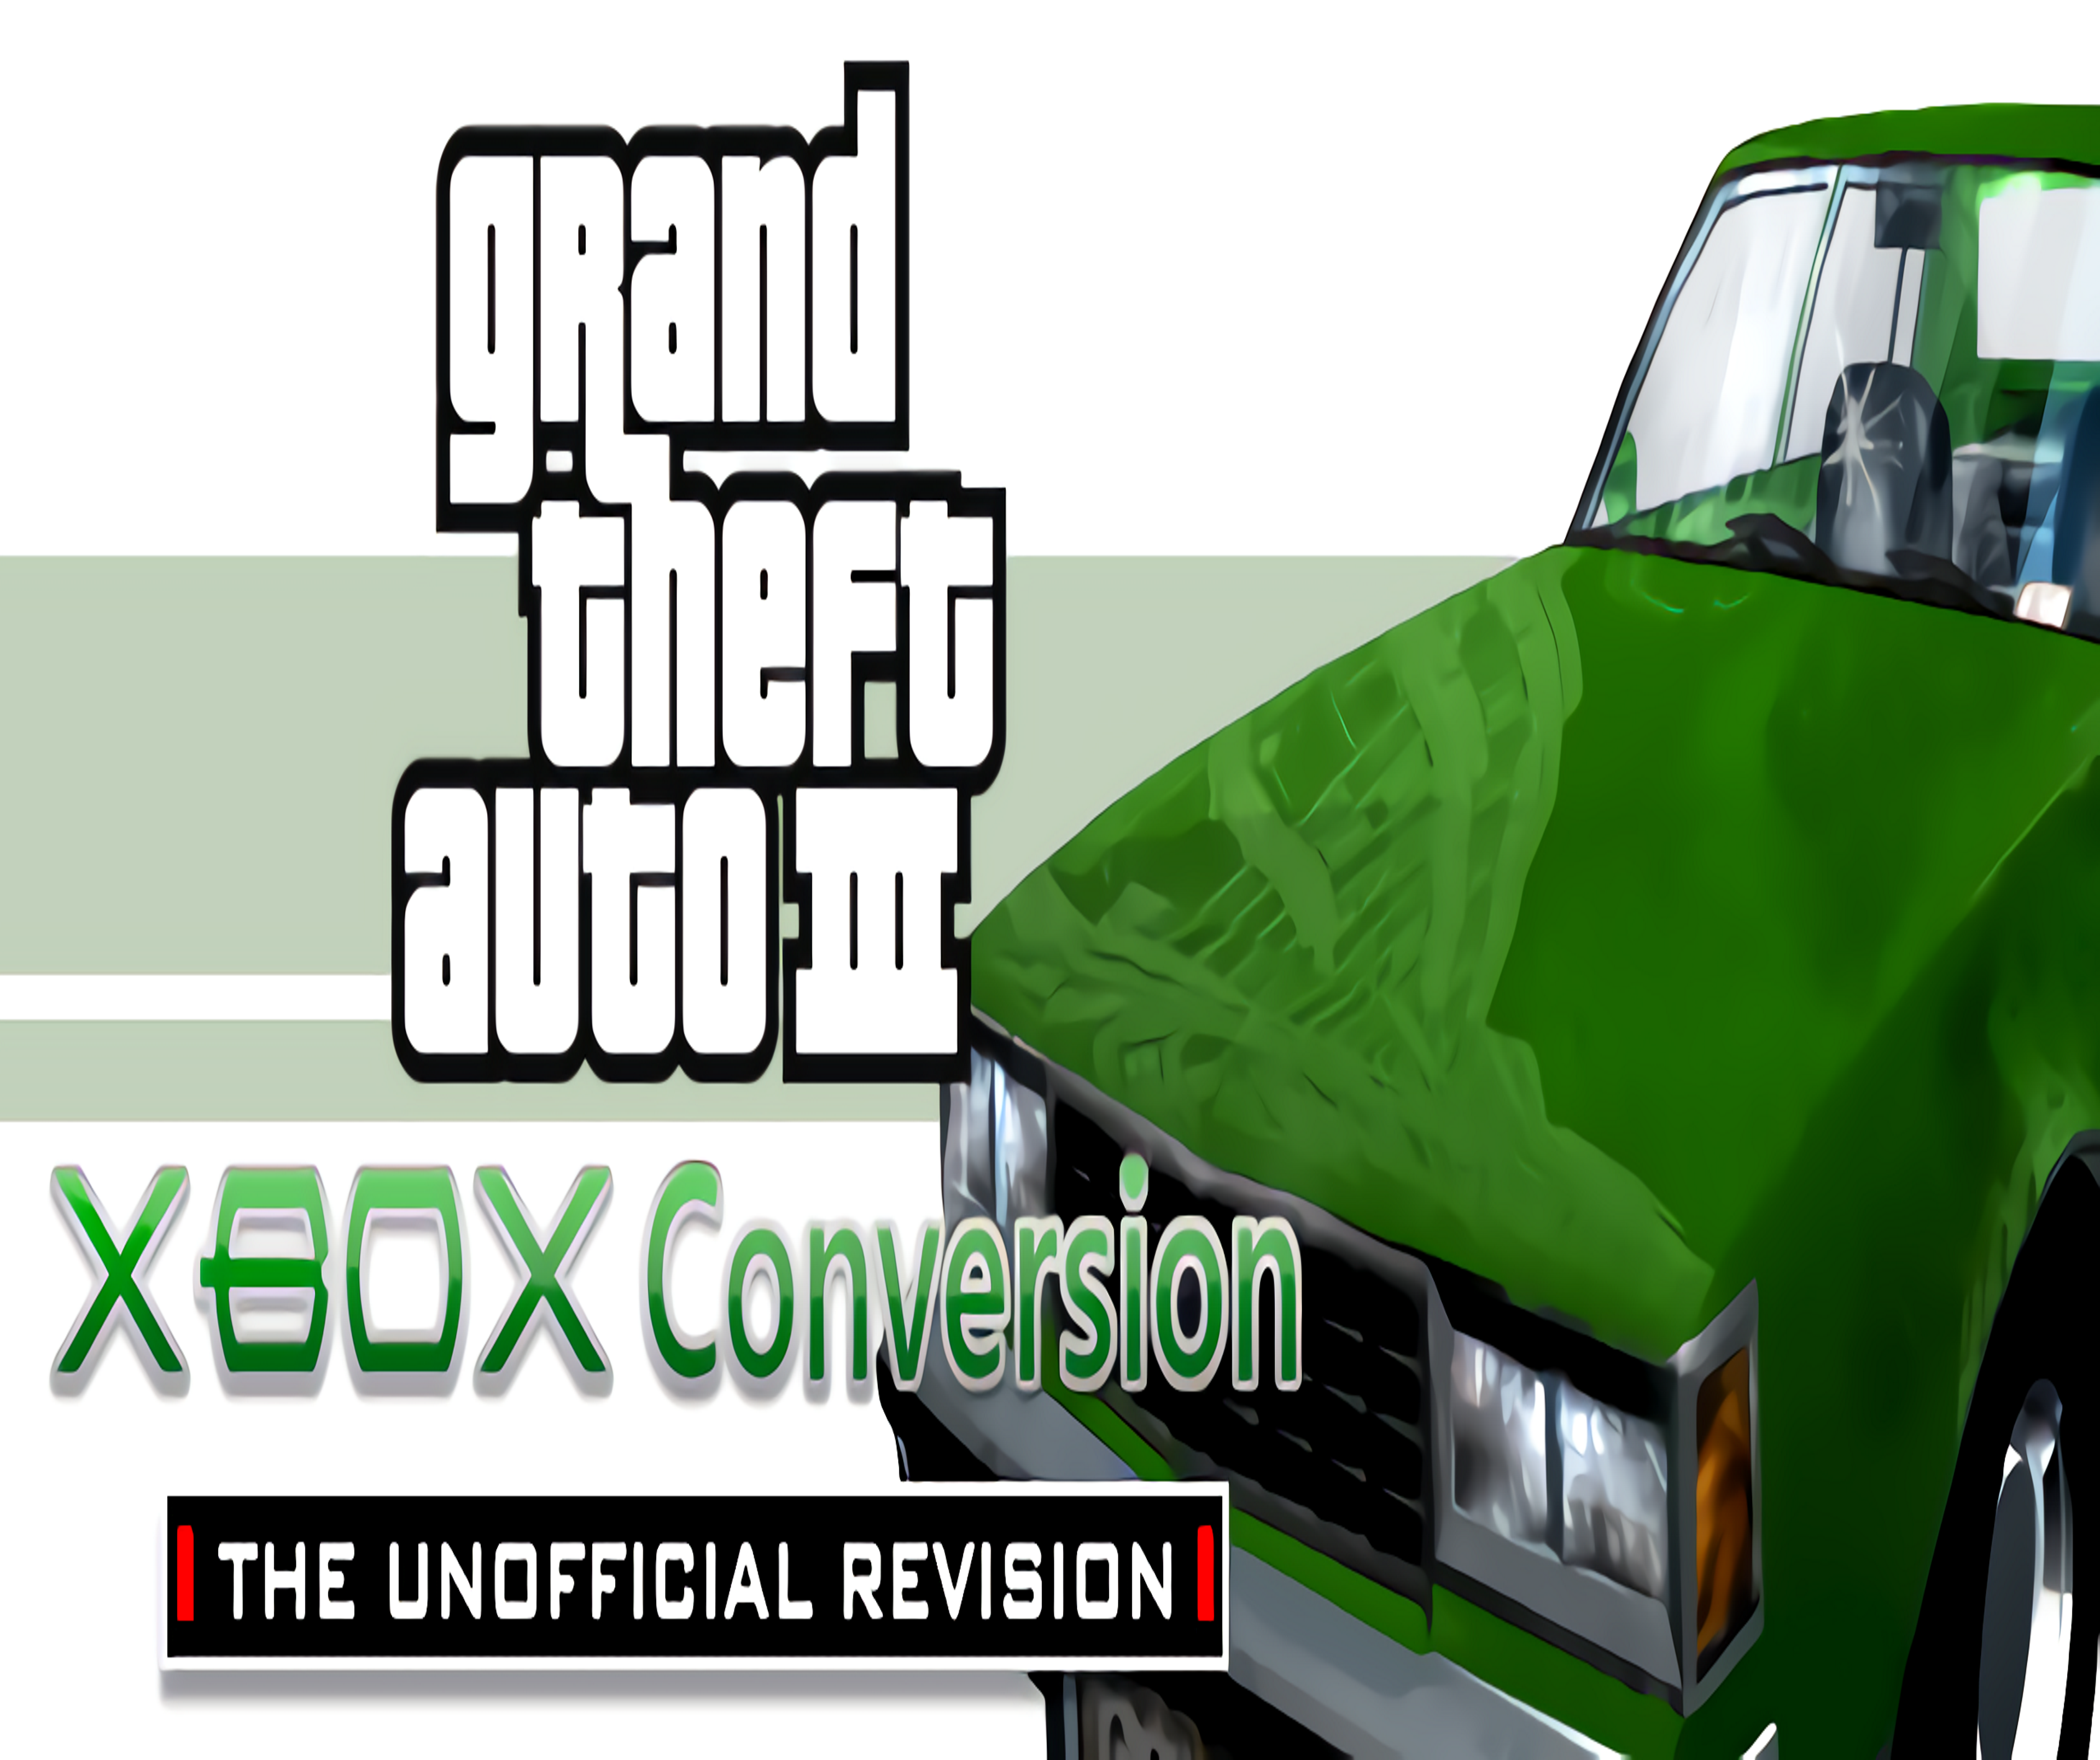 Grand Theft Auto III - Xbox, Xbox